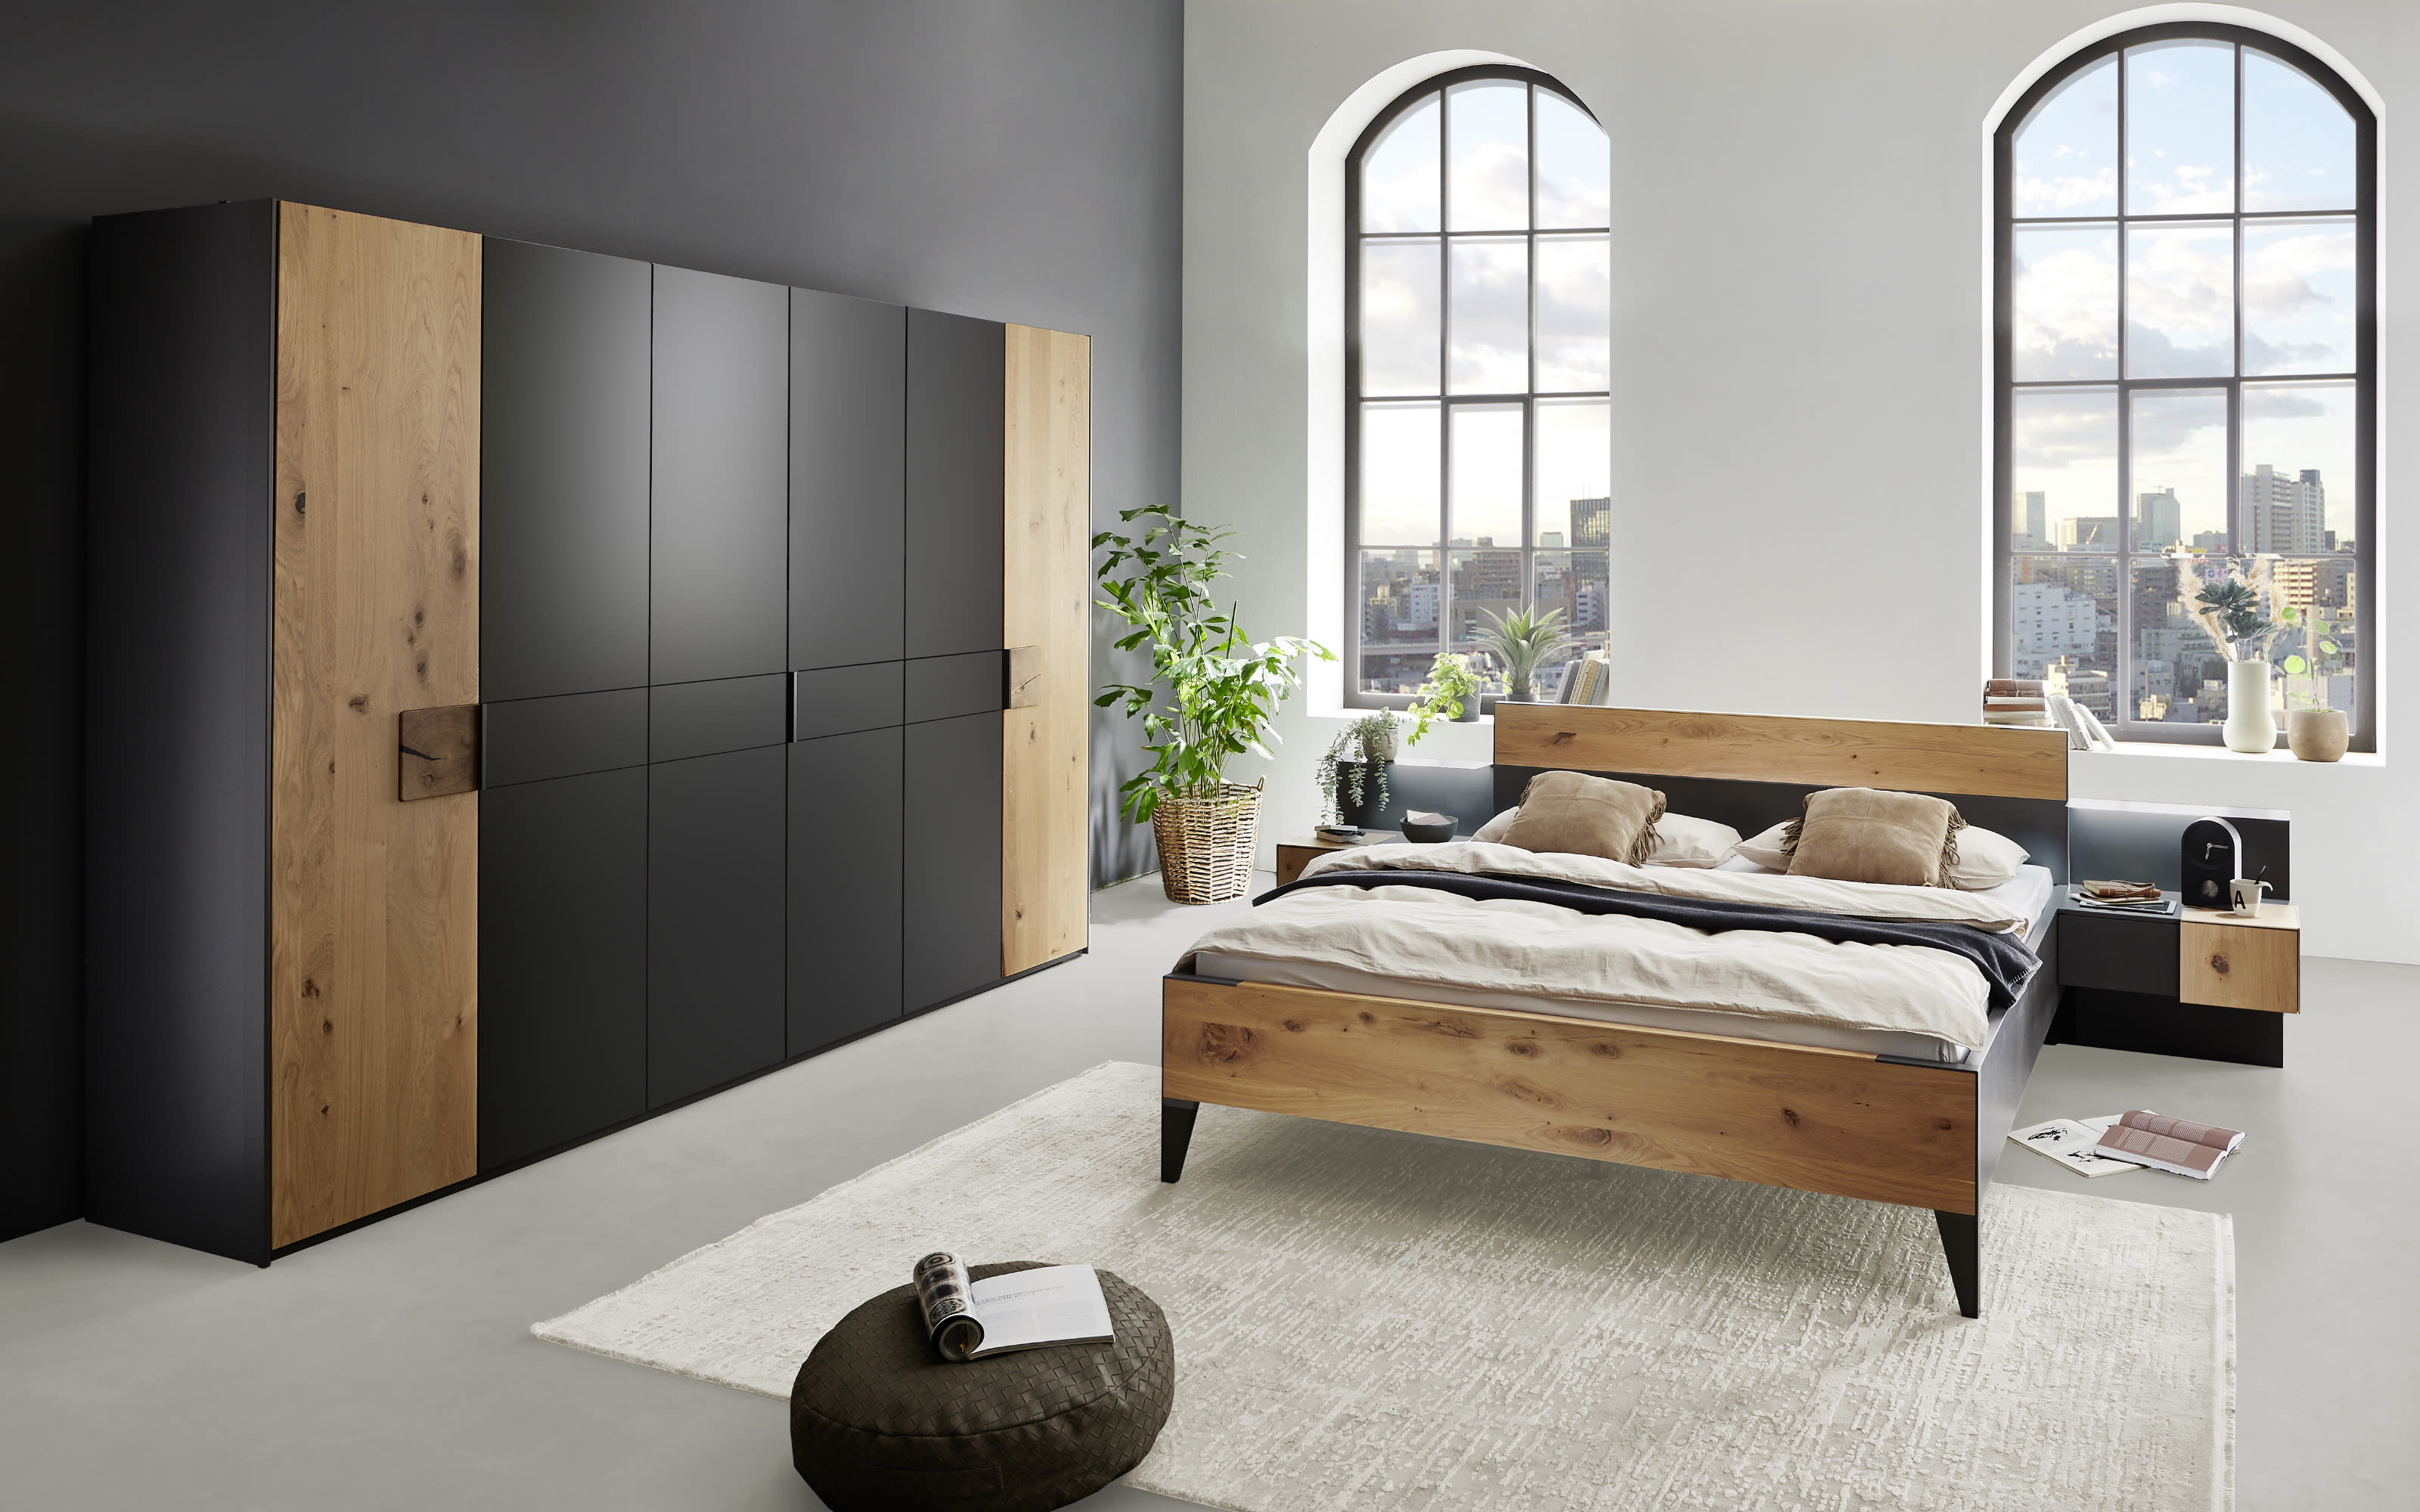 300 Schlafzimmer Keni, kaufen online Hardeck 180 cm, bei 223 Schrank x x 200 cm graphit,